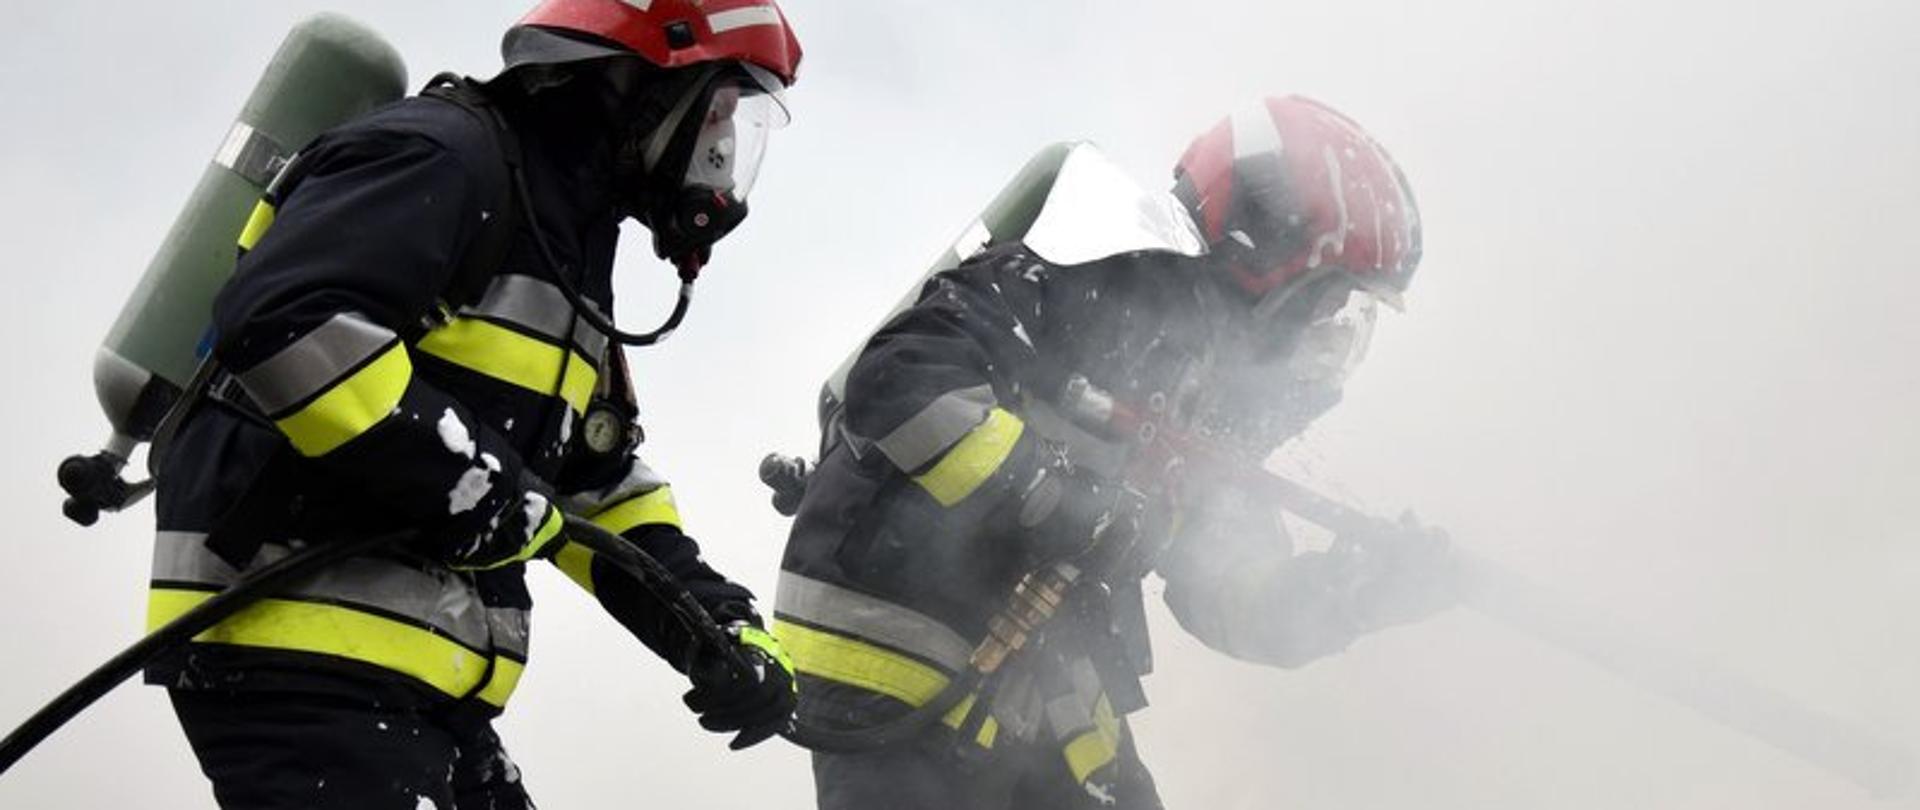 Dwóch strażaków w zadymionym miejscu gasi pożar. Strażacy w ubraniach specjalnych z aparatami powietrznymi.